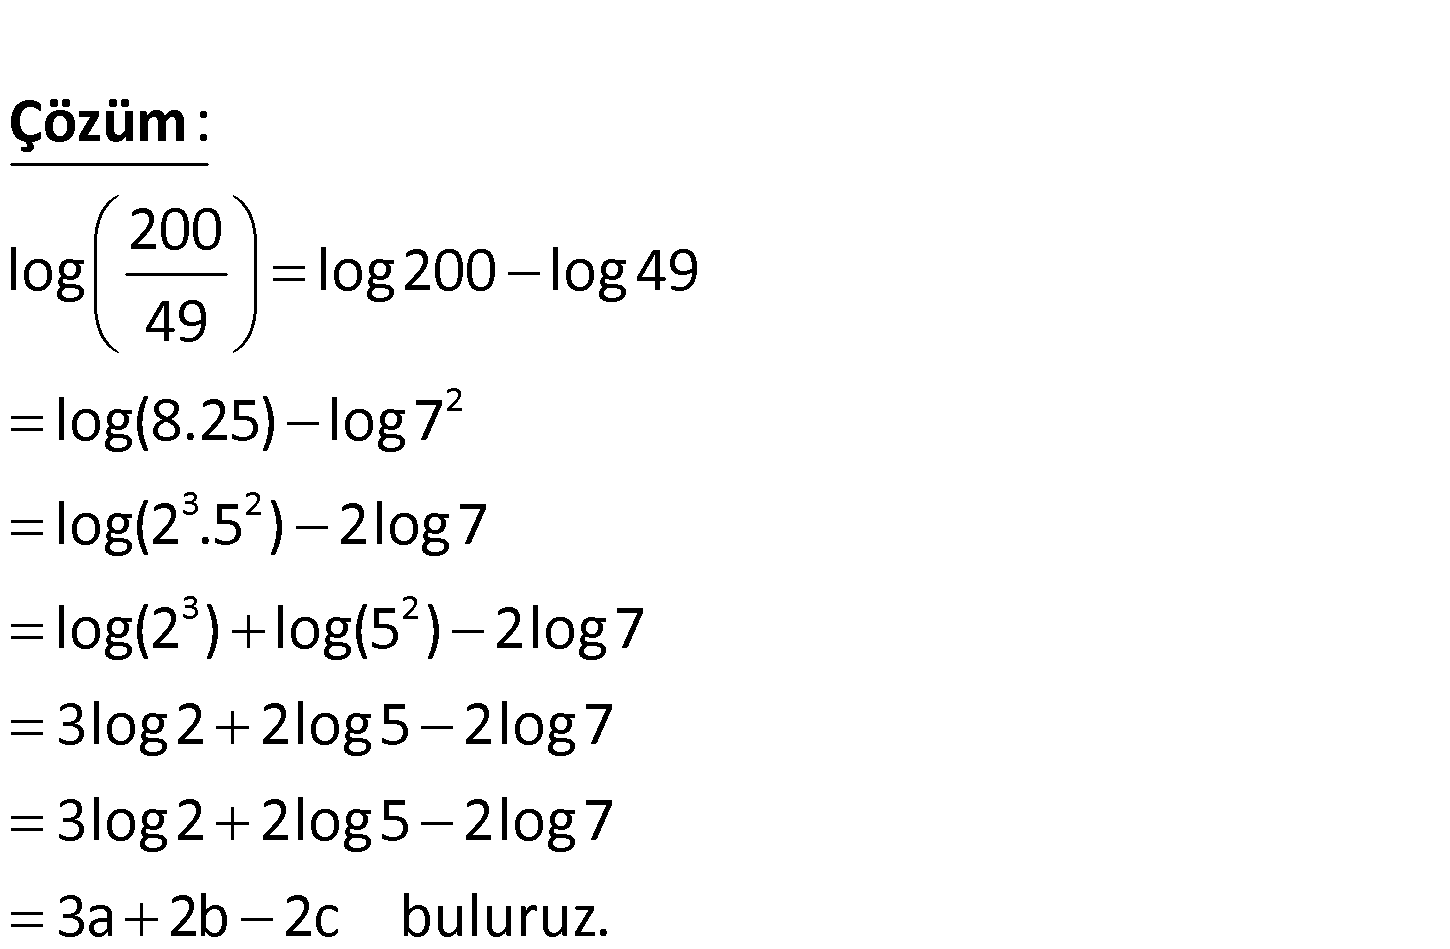 49 log log 1 2 log. Log2. Log 40. Log2 + log2. 2log2 5.